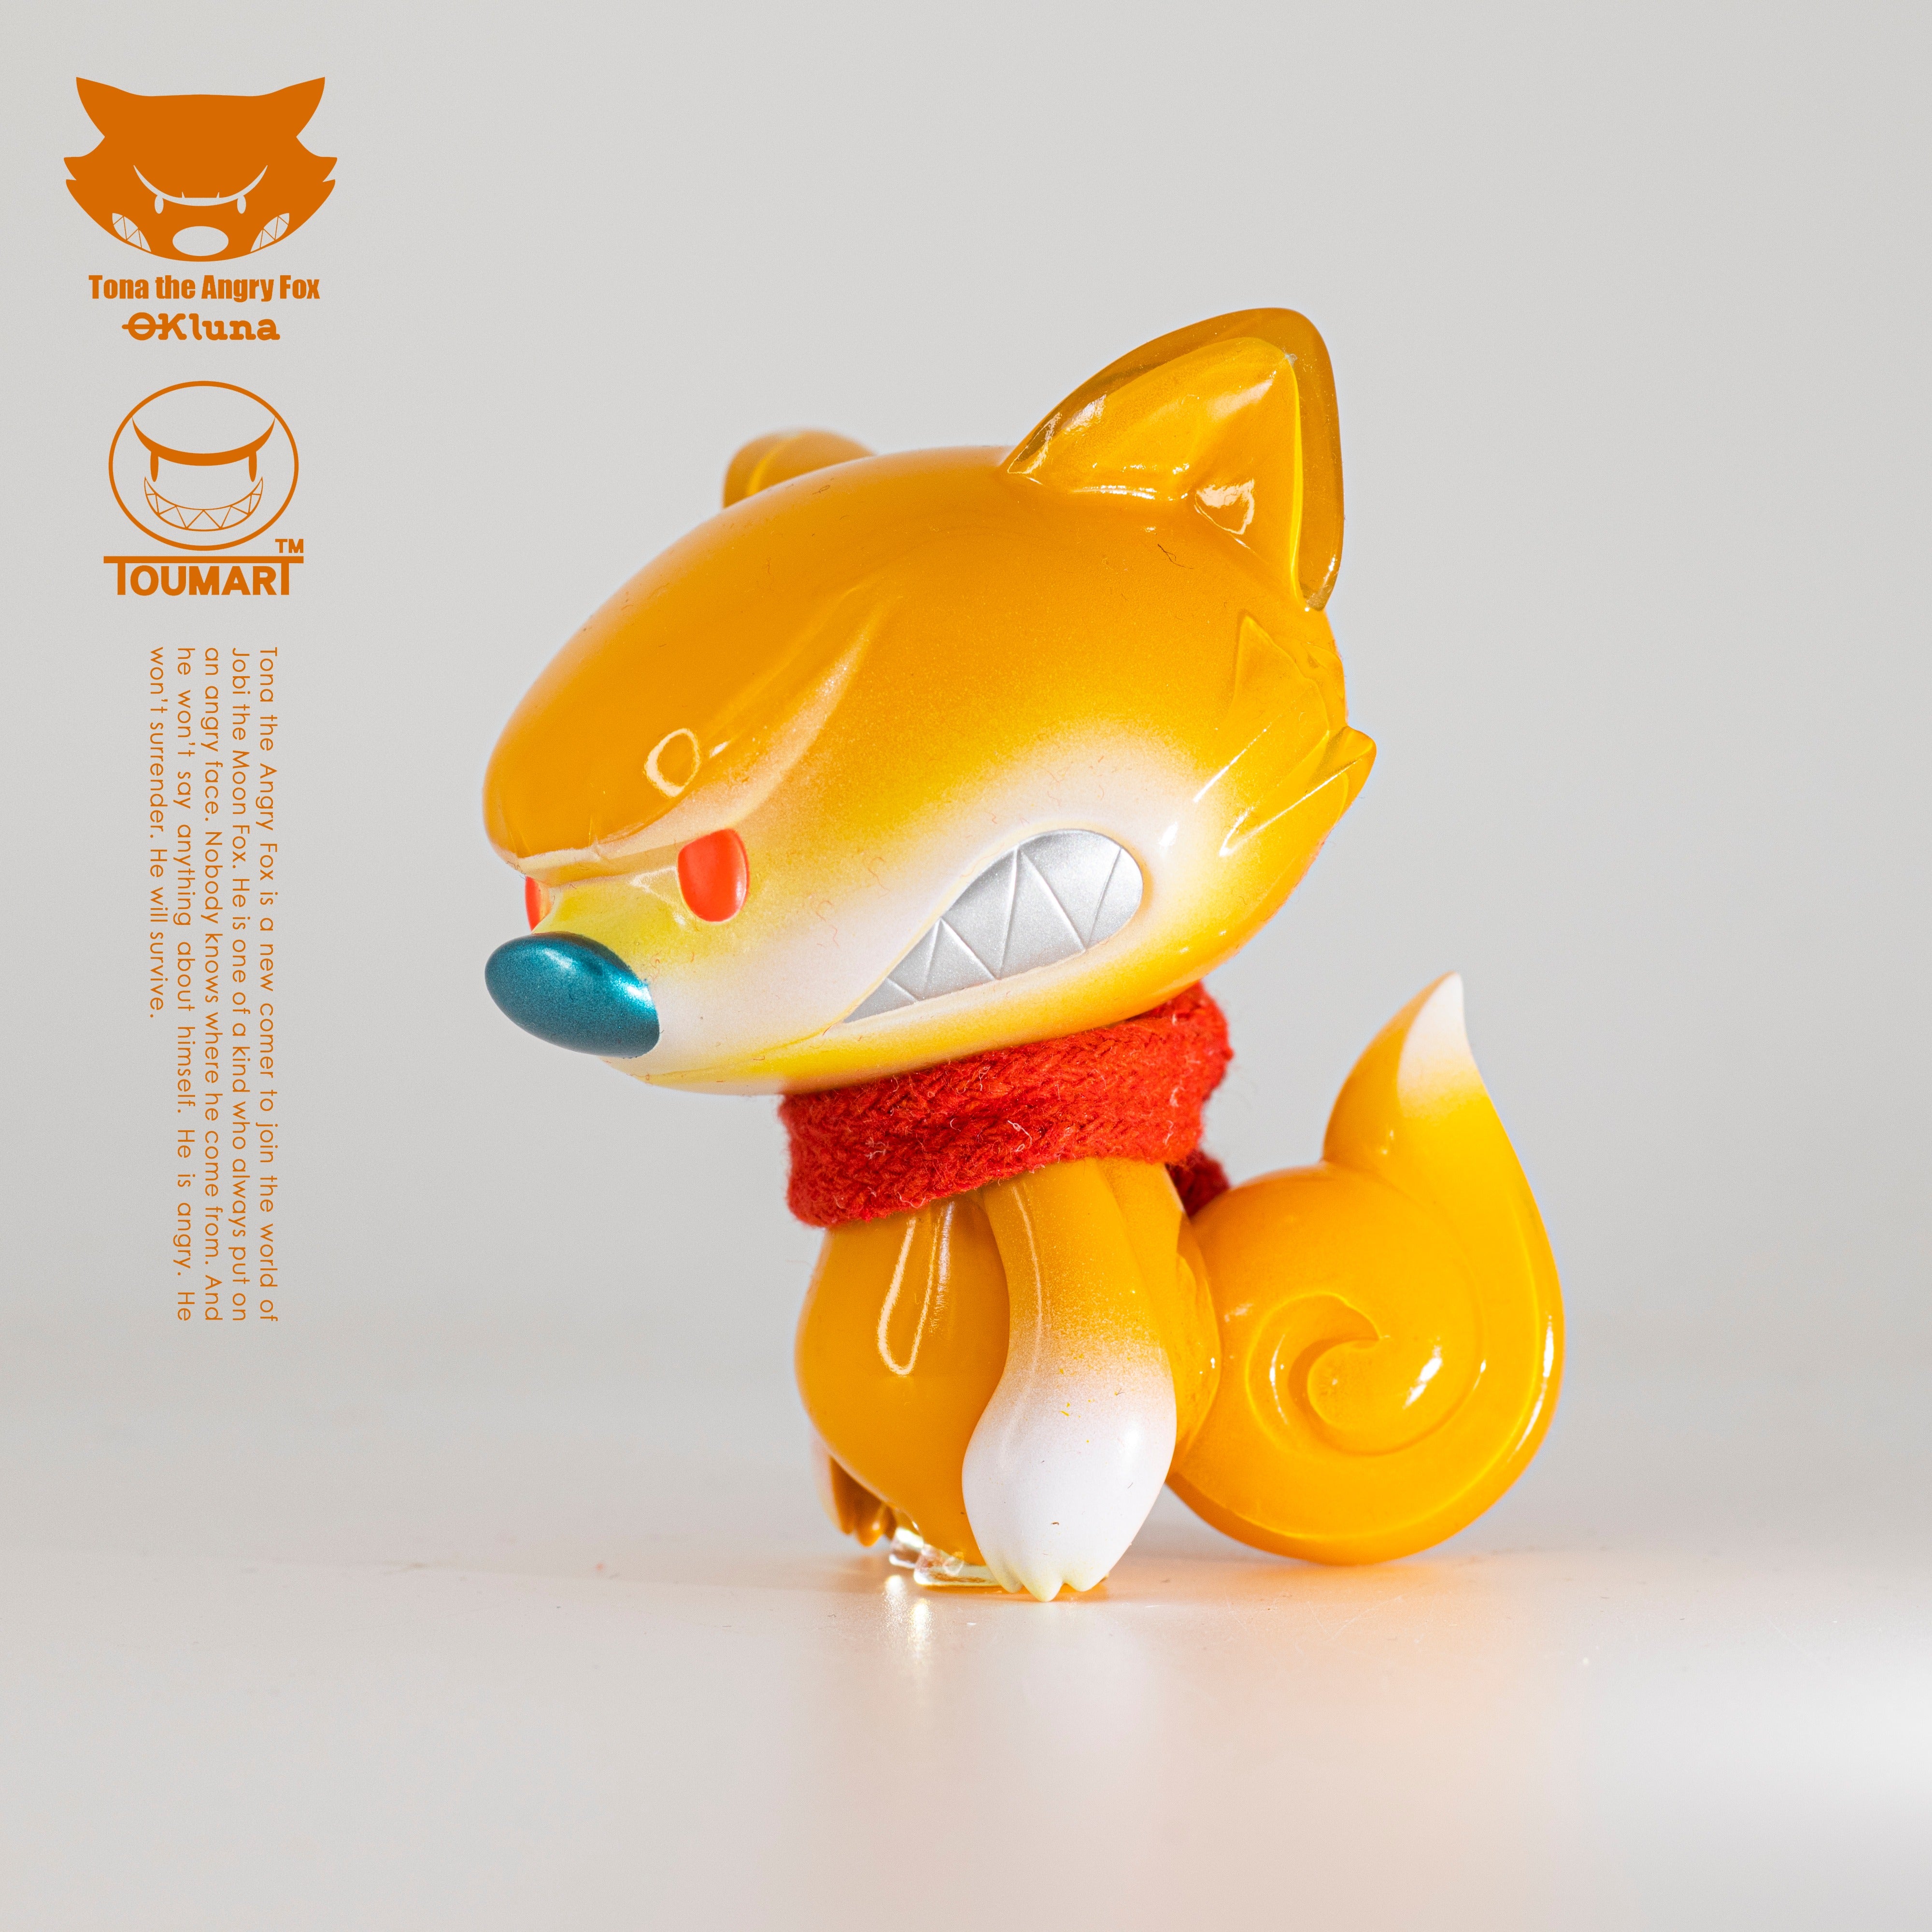 Lil’ Tona The Angry Fox by Touma x Ok Luna